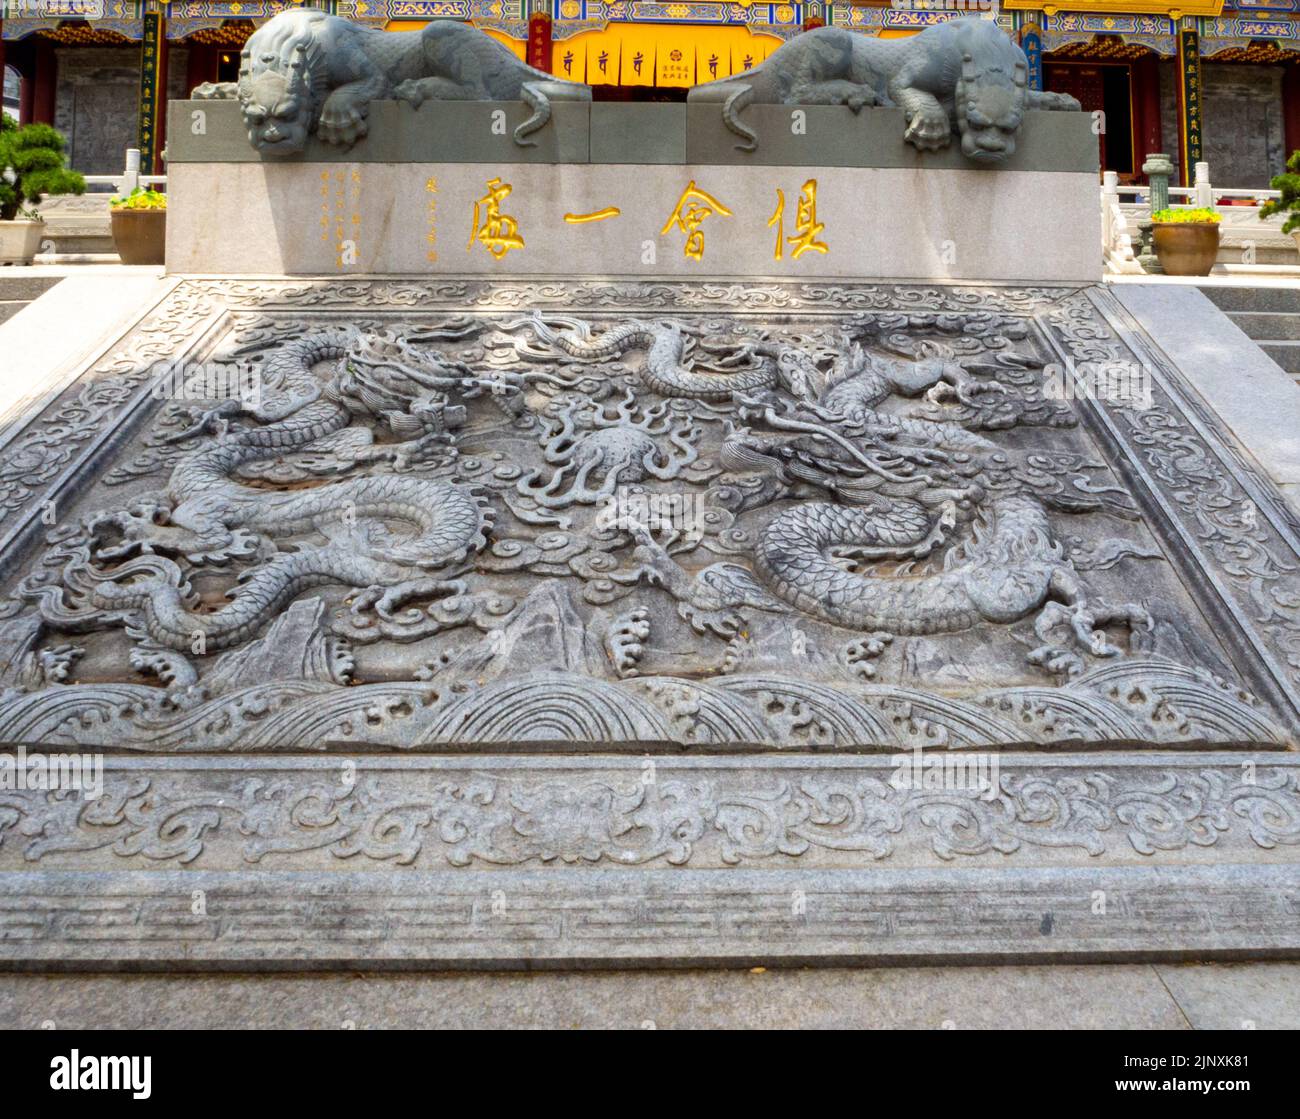 Vieille sculpture en pierre sur une place publique ou une place. La région est une attraction touristique car elle a beaucoup d'art religieux chinois traditionnel Banque D'Images